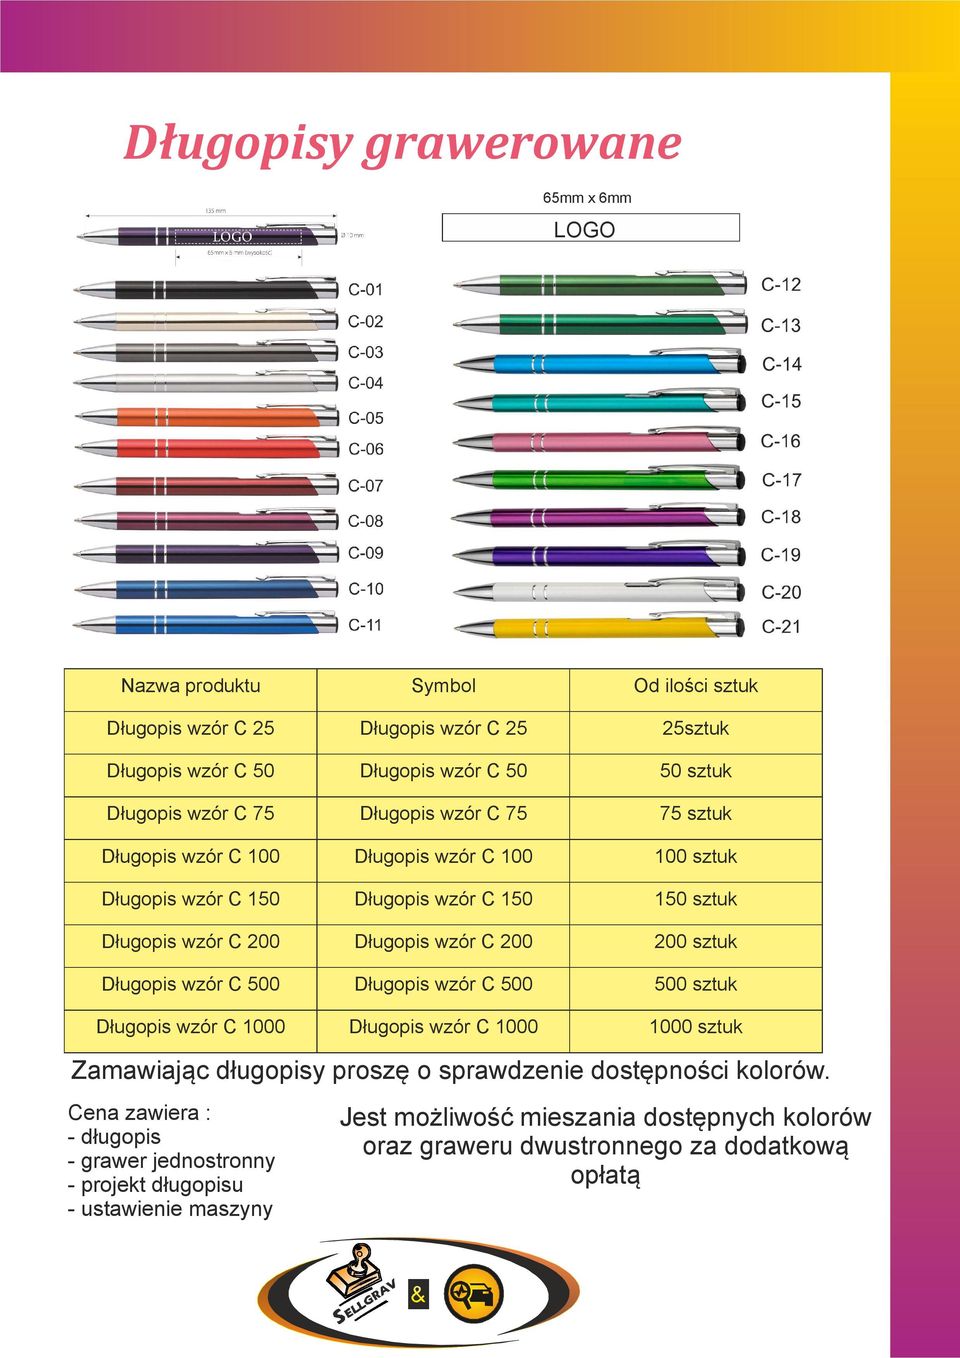 sztuk Długopis wzór C 500 Długopis wzór C 500 500 sztuk Długopis wzór C 1000 Długopis wzór C 1000 1000 sztuk Zamawiając długopisy proszę o sprawdzenie dostępności kolorów.